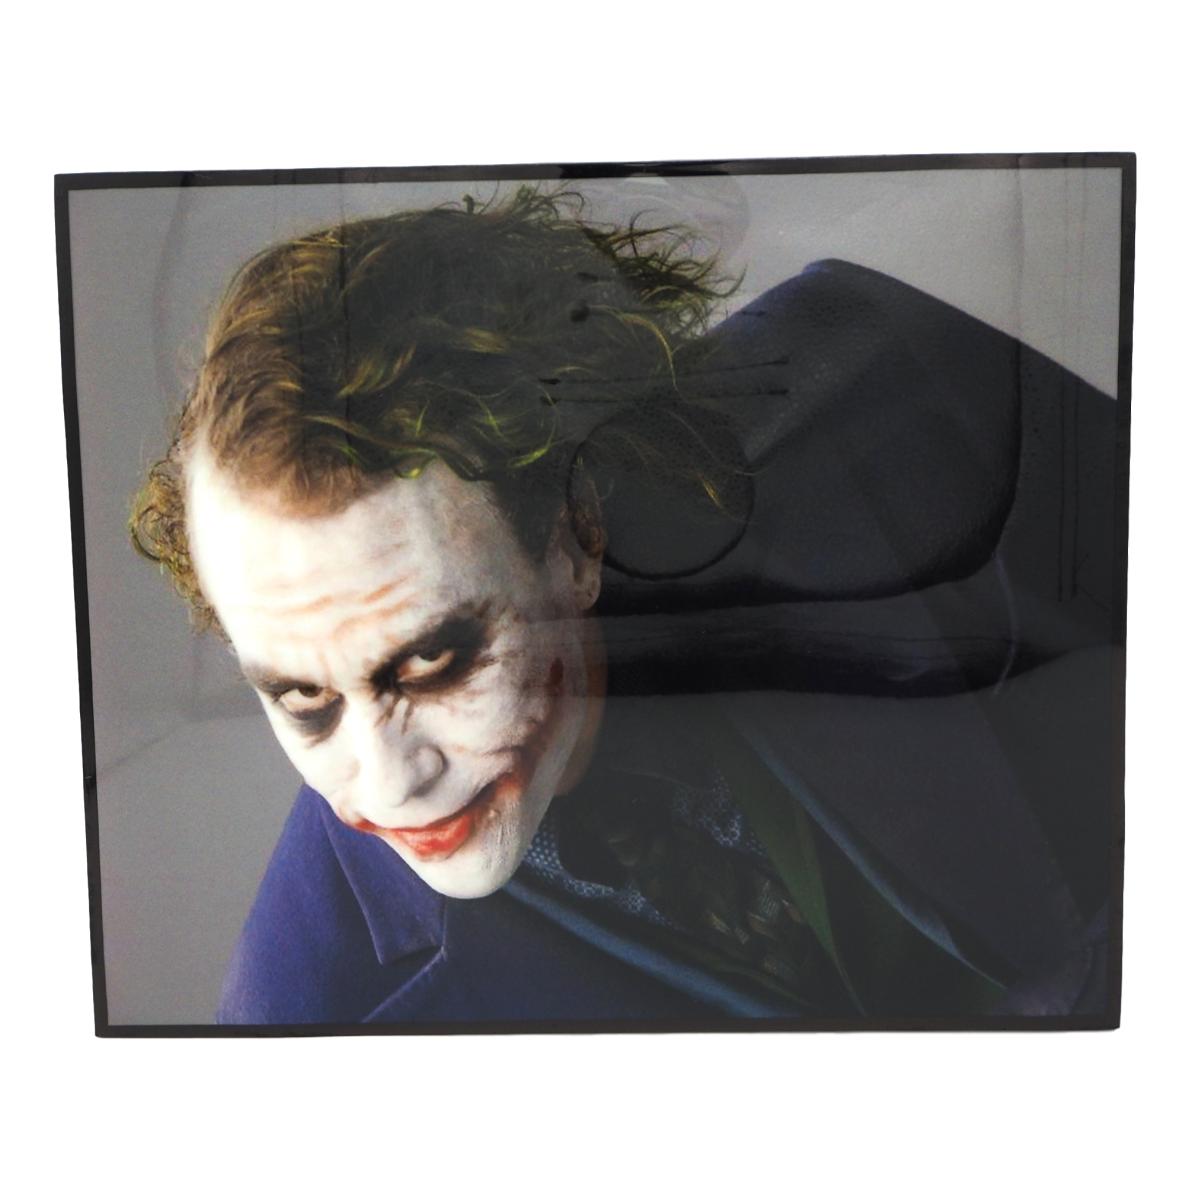 楽天市場 送料無料 ジョーカー Joker バットマン アートパネル 据え置き 壁掛けフック付き アーティスト Popパネル インテリア アートフレーム ポスター インテリアアートパネル ポップアートパネルクール 面白い かっこいい アート 雑貨 カフェ リビング 額付き